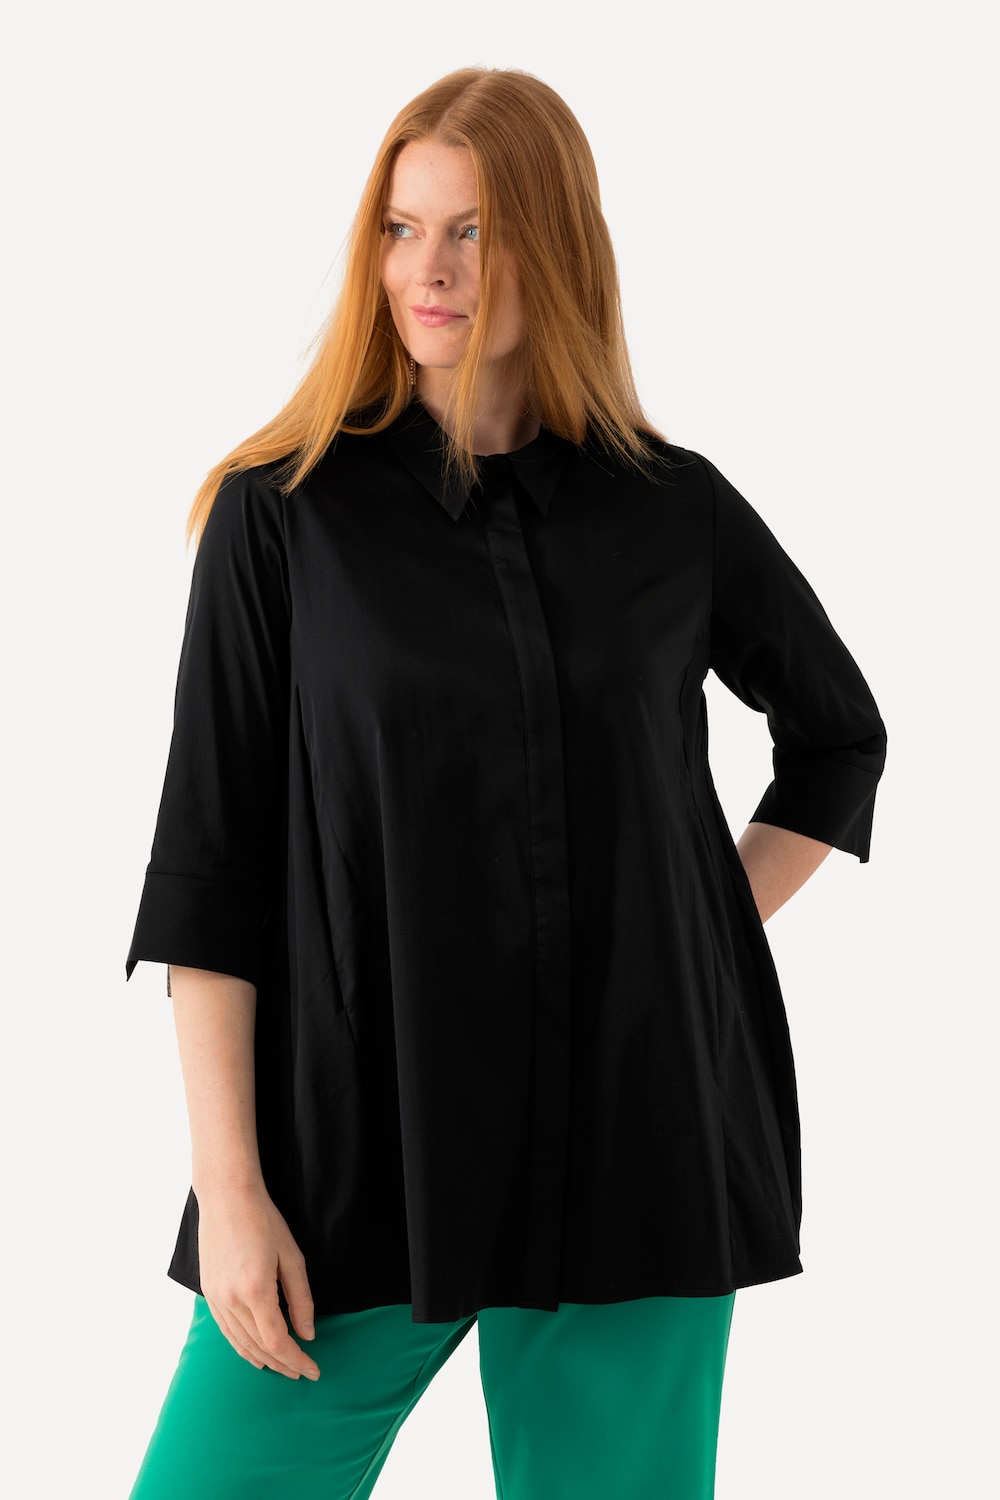 Große Größen Bluse, Damen, schwarz, Größe: 42/44, Baumwolle/Synthetische Fasern, Ulla Popken